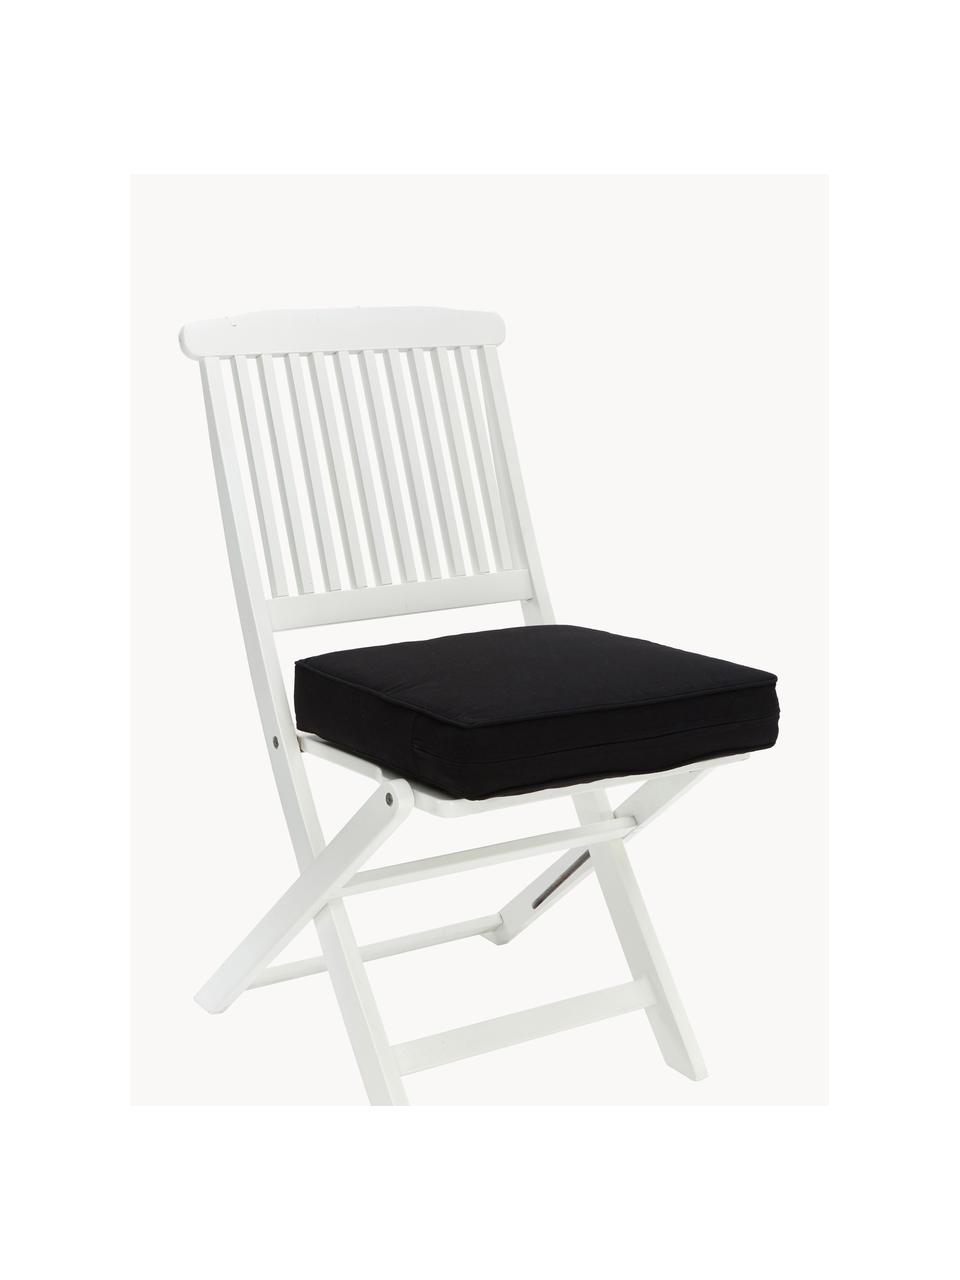 Cojines de asiento altos Zoey, 2 uds., Funda: 100% algodón, Negro, An 40 x L 40 cm